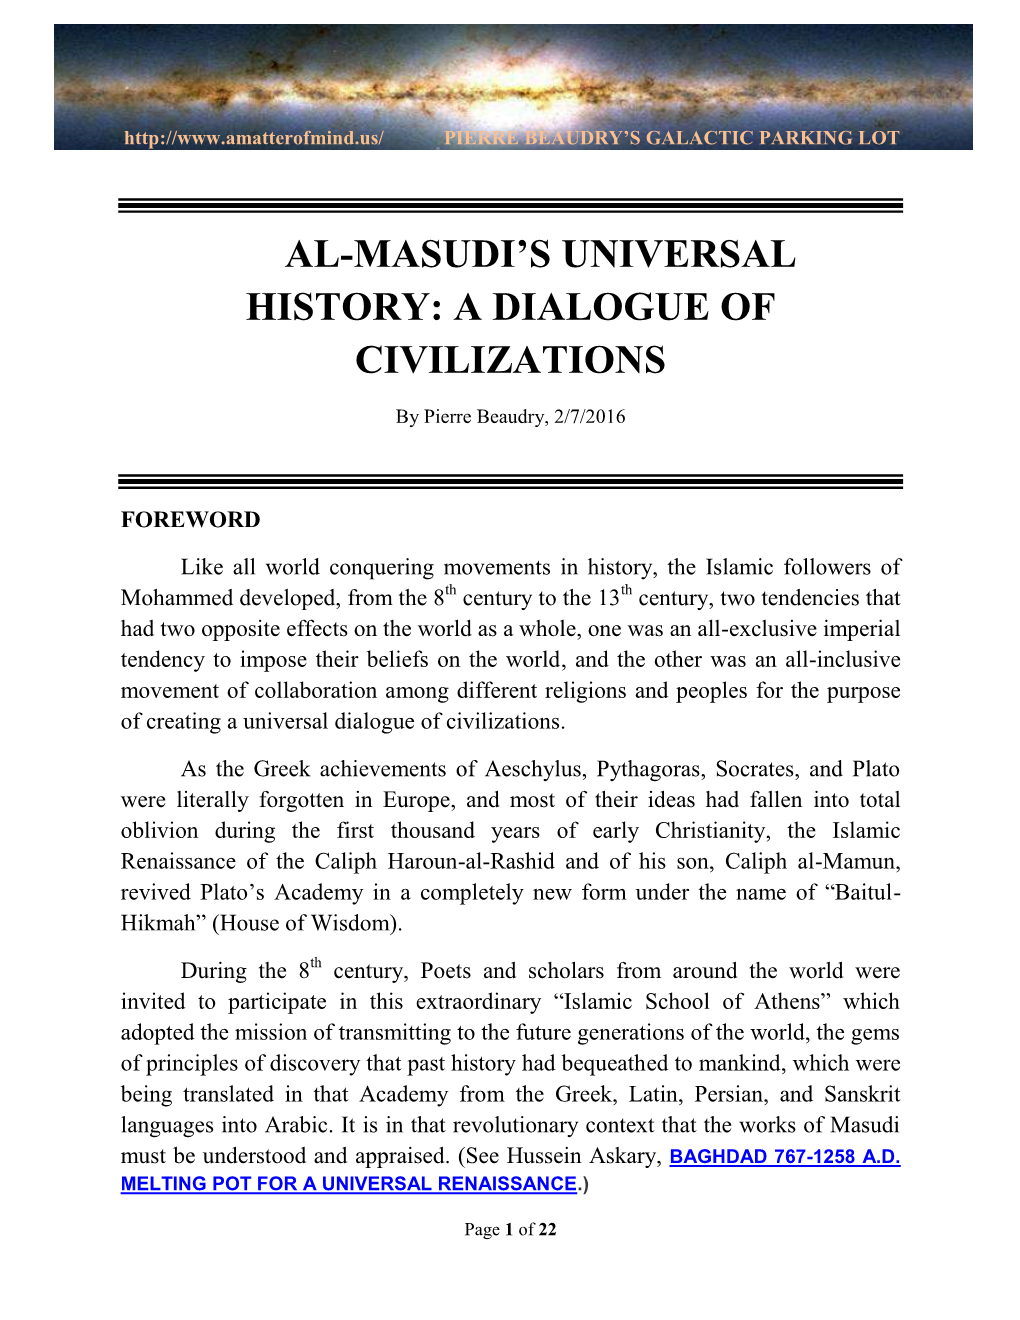 Al-Masudi's Universal History: a Dialogue of Civilizations